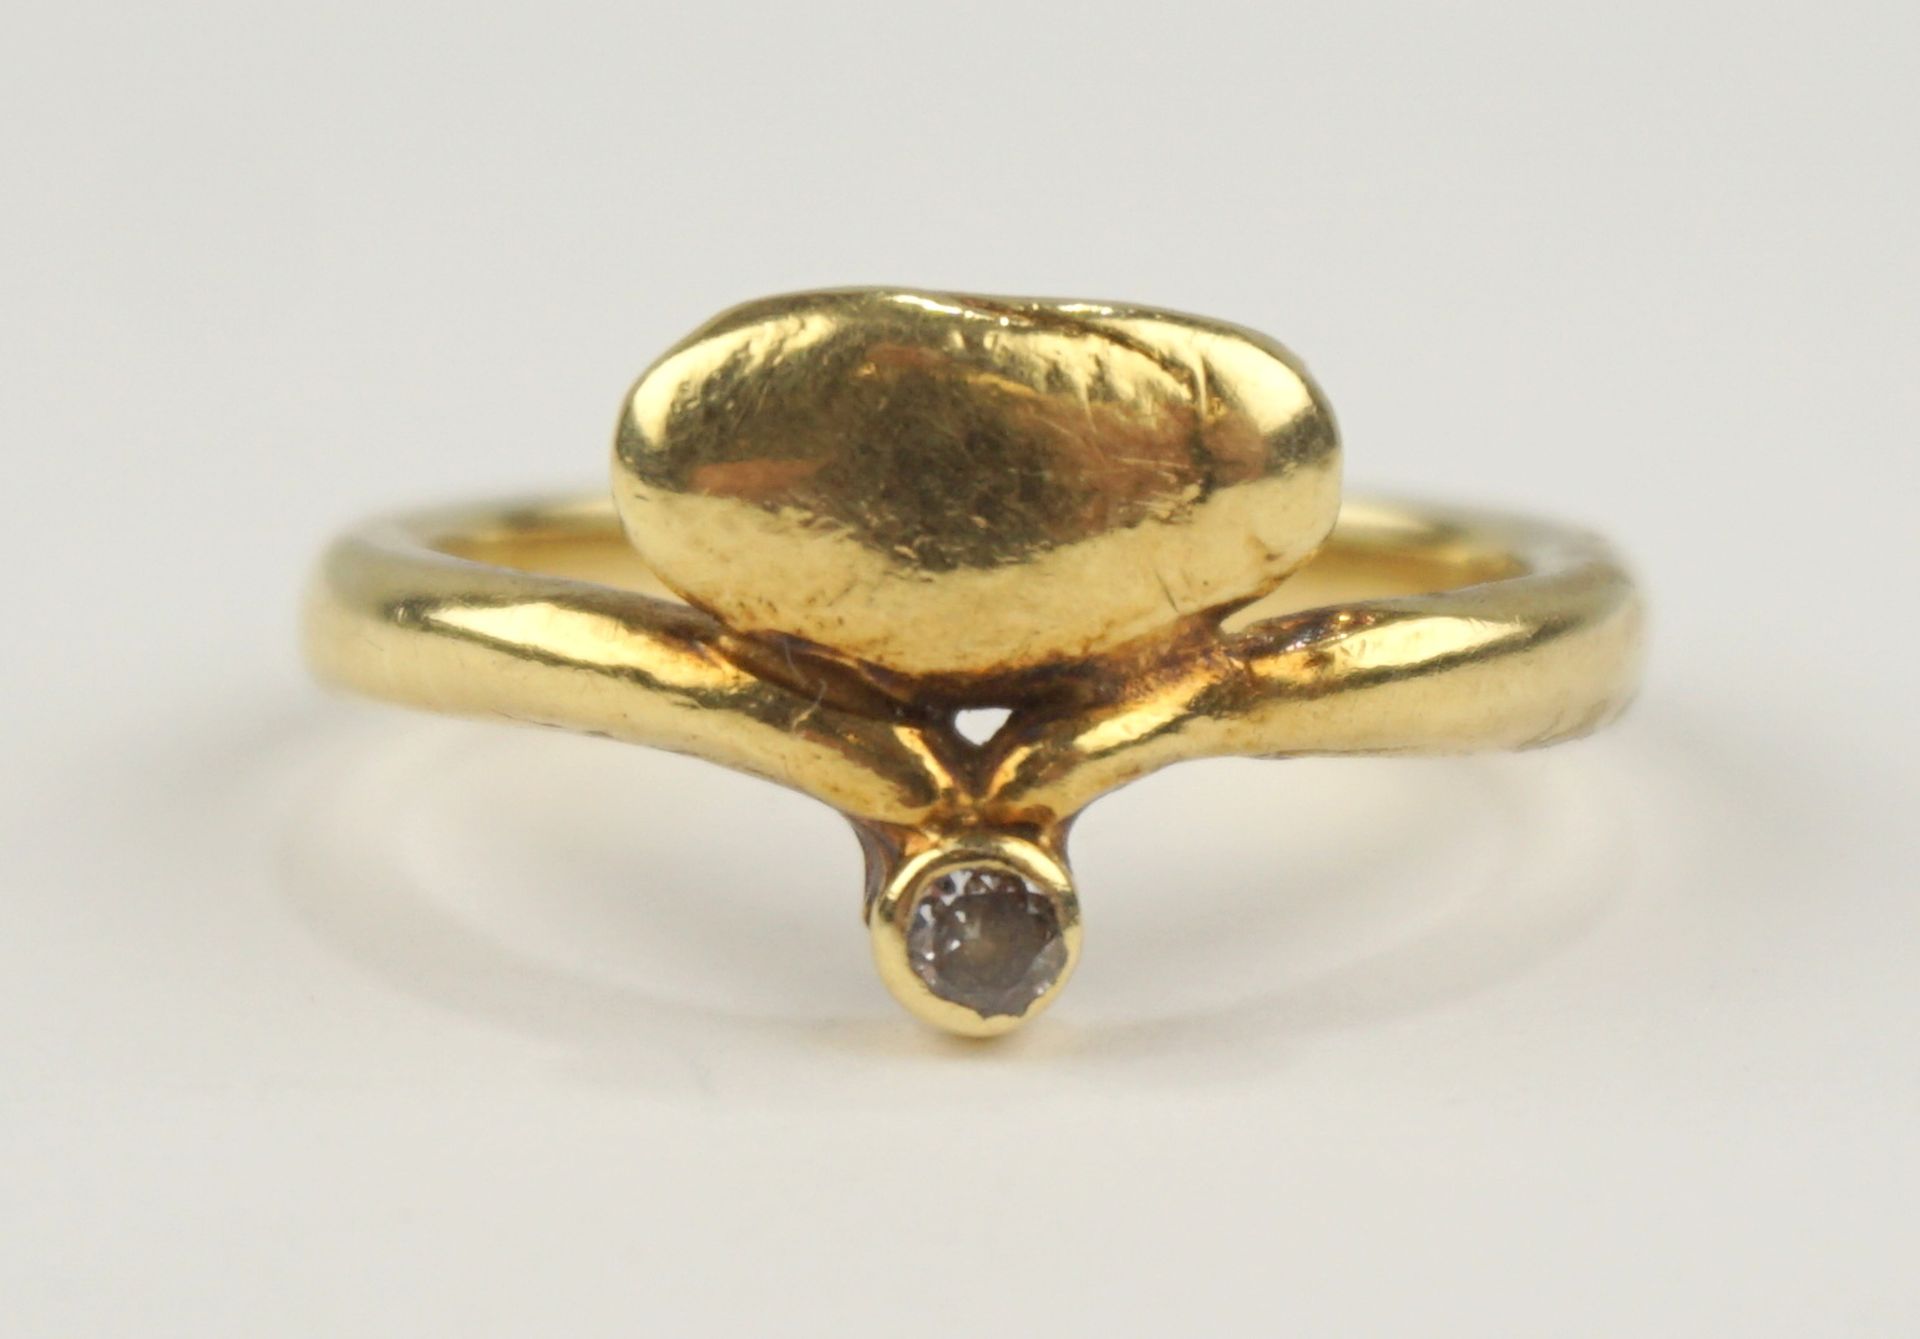 Ring mit kleinem Diamant-Brillant, Goldschmiedearbeit, 585er Gold